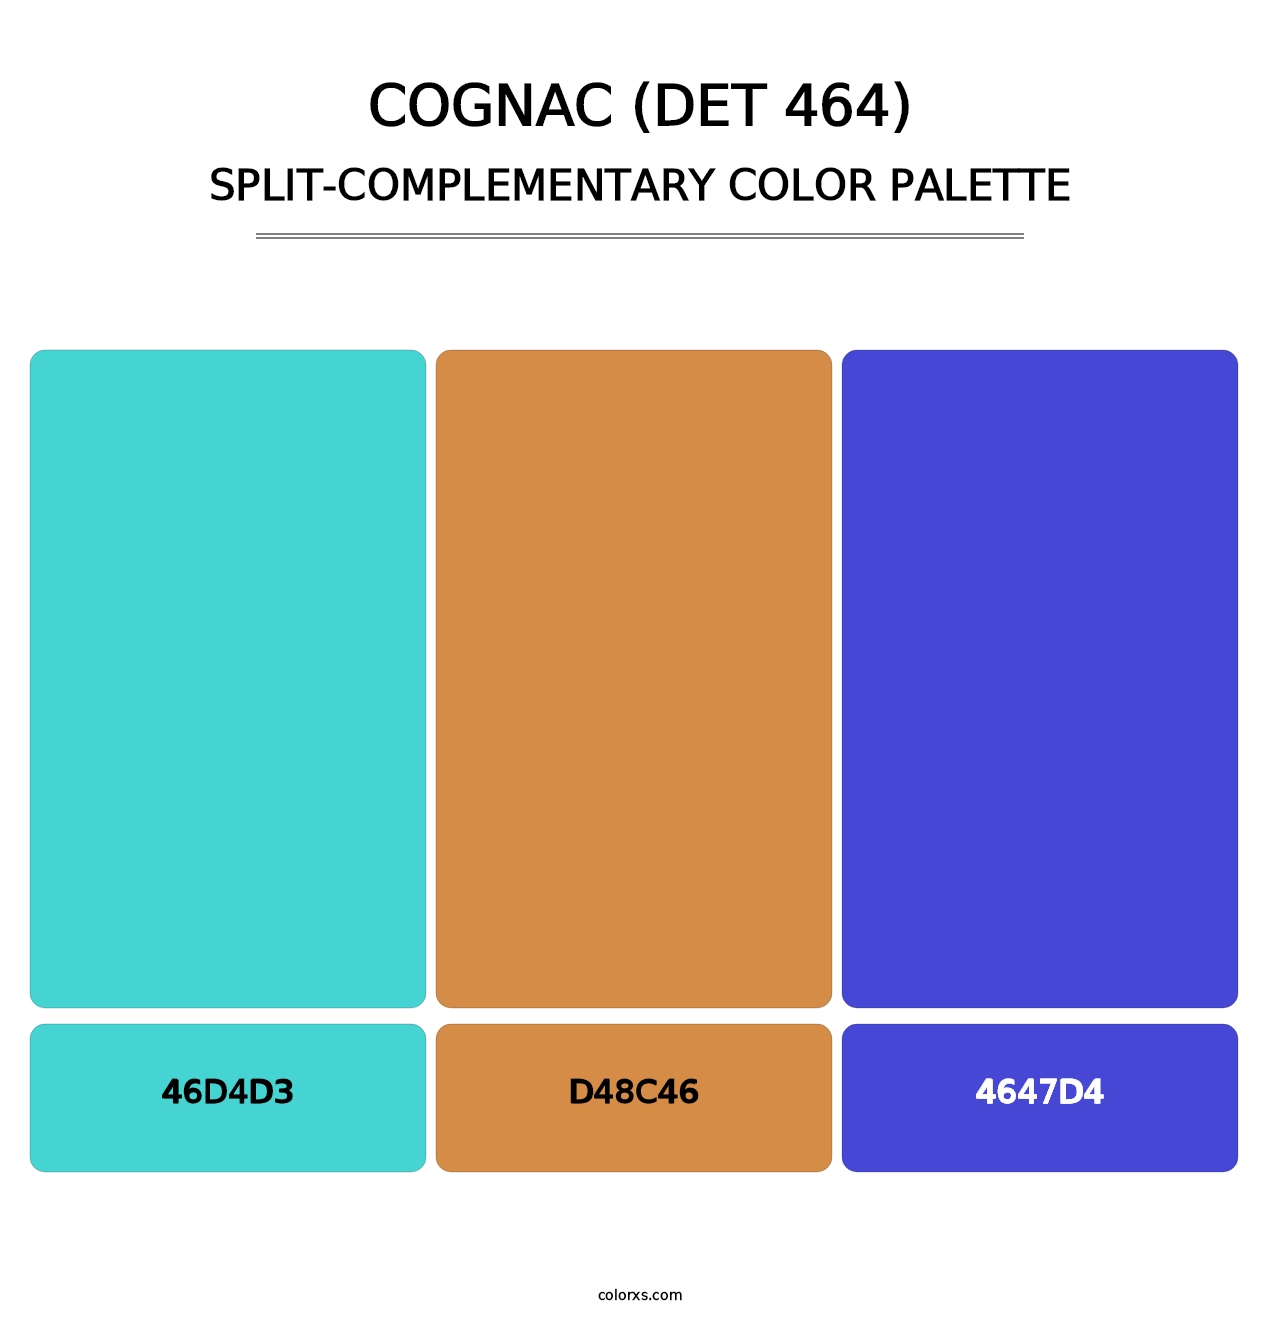 Cognac (DET 464) - Split-Complementary Color Palette